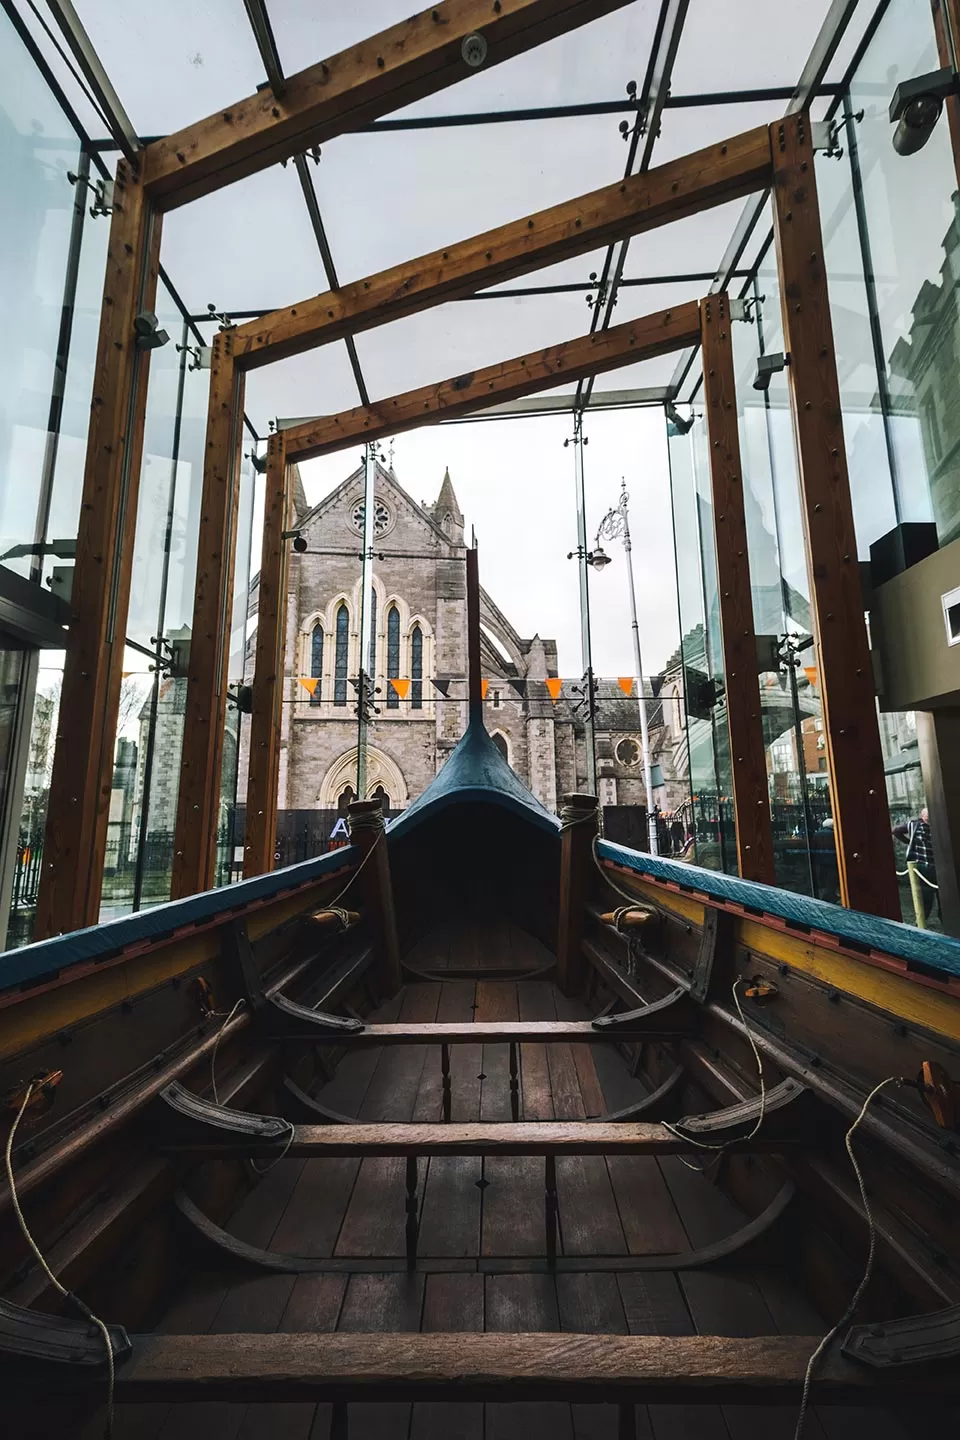 Vikings in Ireland - Dublinia Viking Longboat